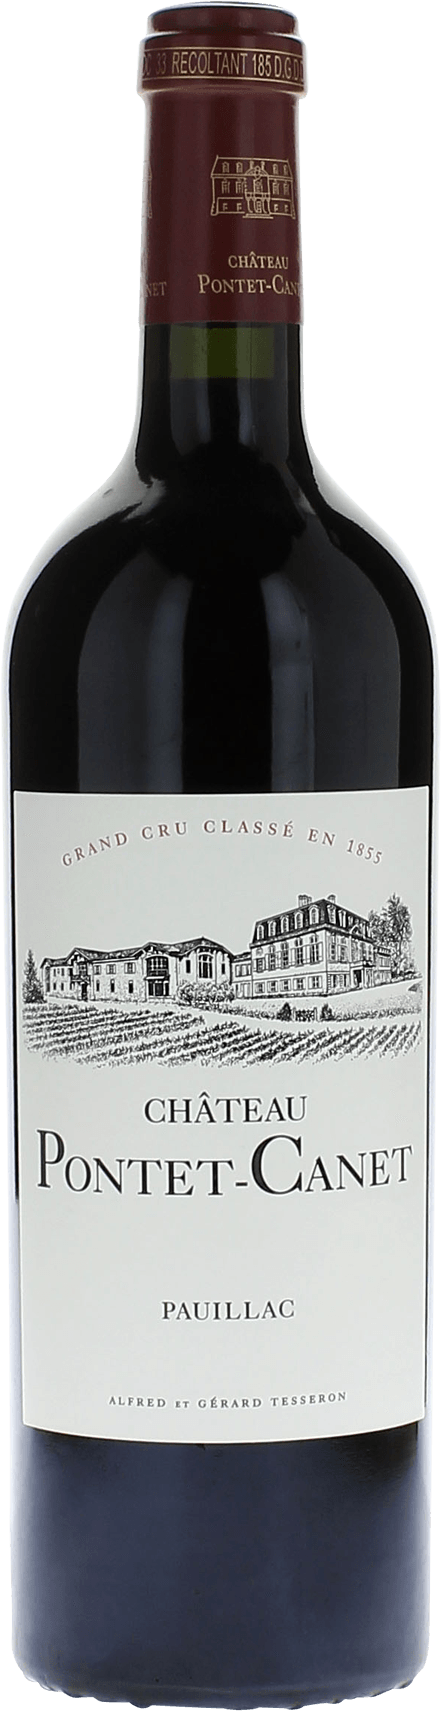 Pontet canet 2004 5me Grand cru class Pauillac, Bordeaux rouge